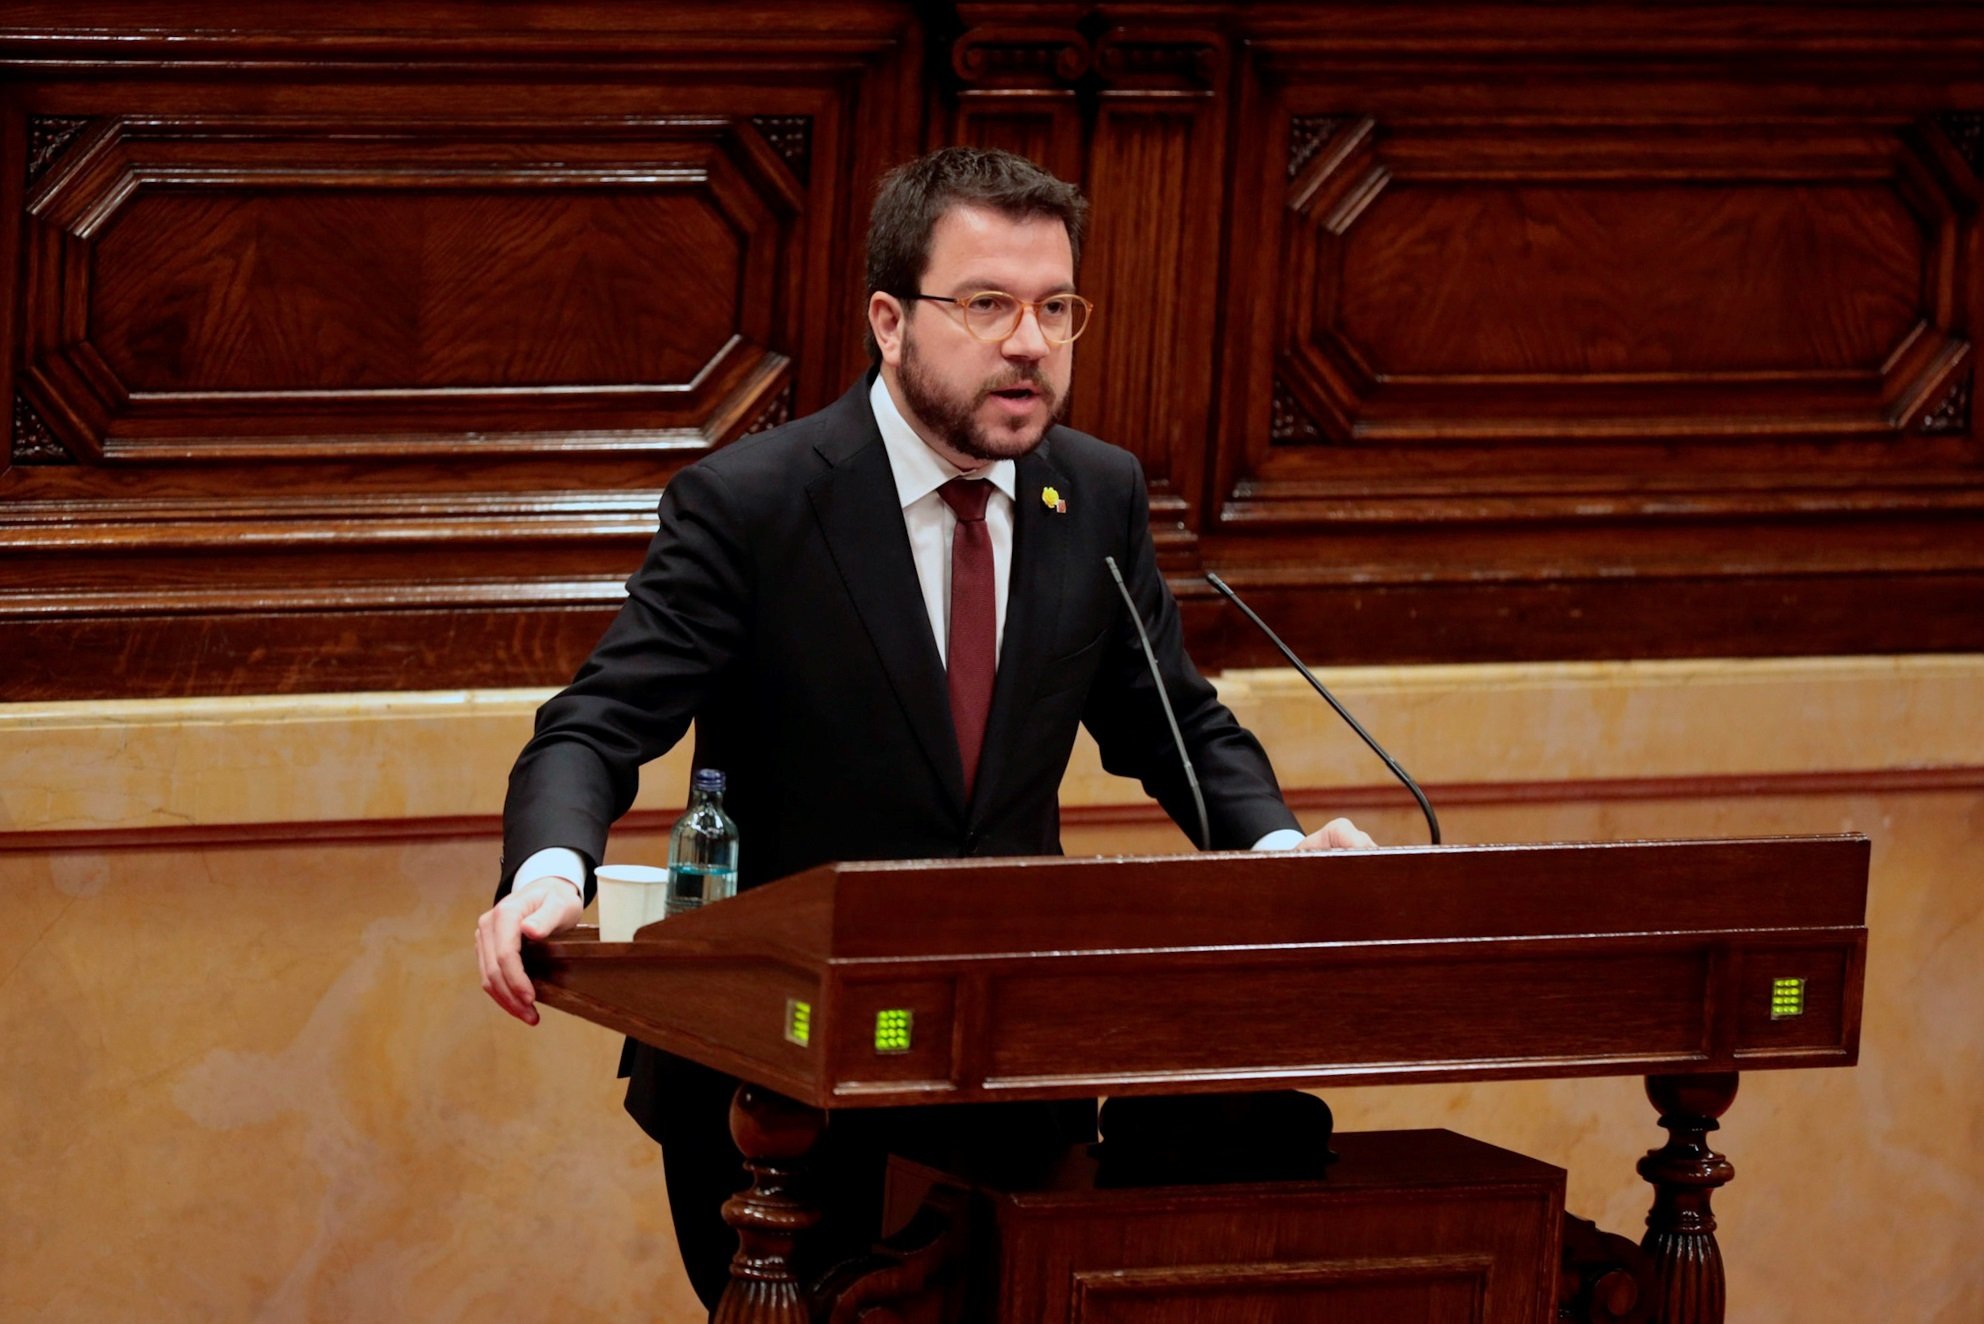 Aragonès insisteix: "El Govern no farà cap retallada"